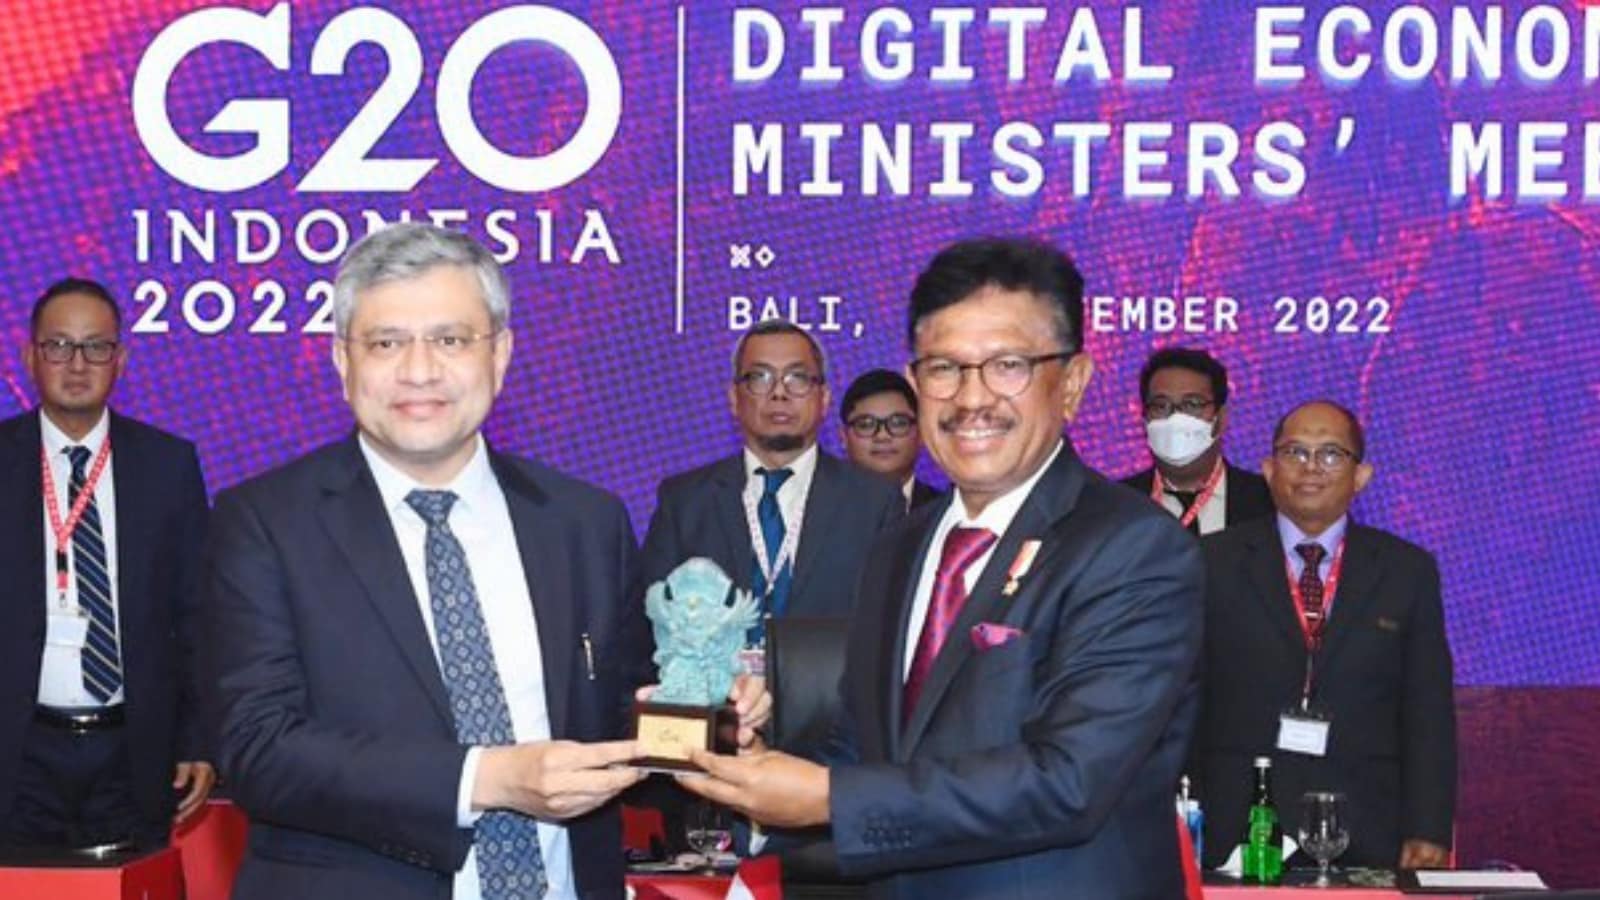 Ketua Gugus Tugas Ekonomi Digital G20 Ditransfer ke India dari Indonesia